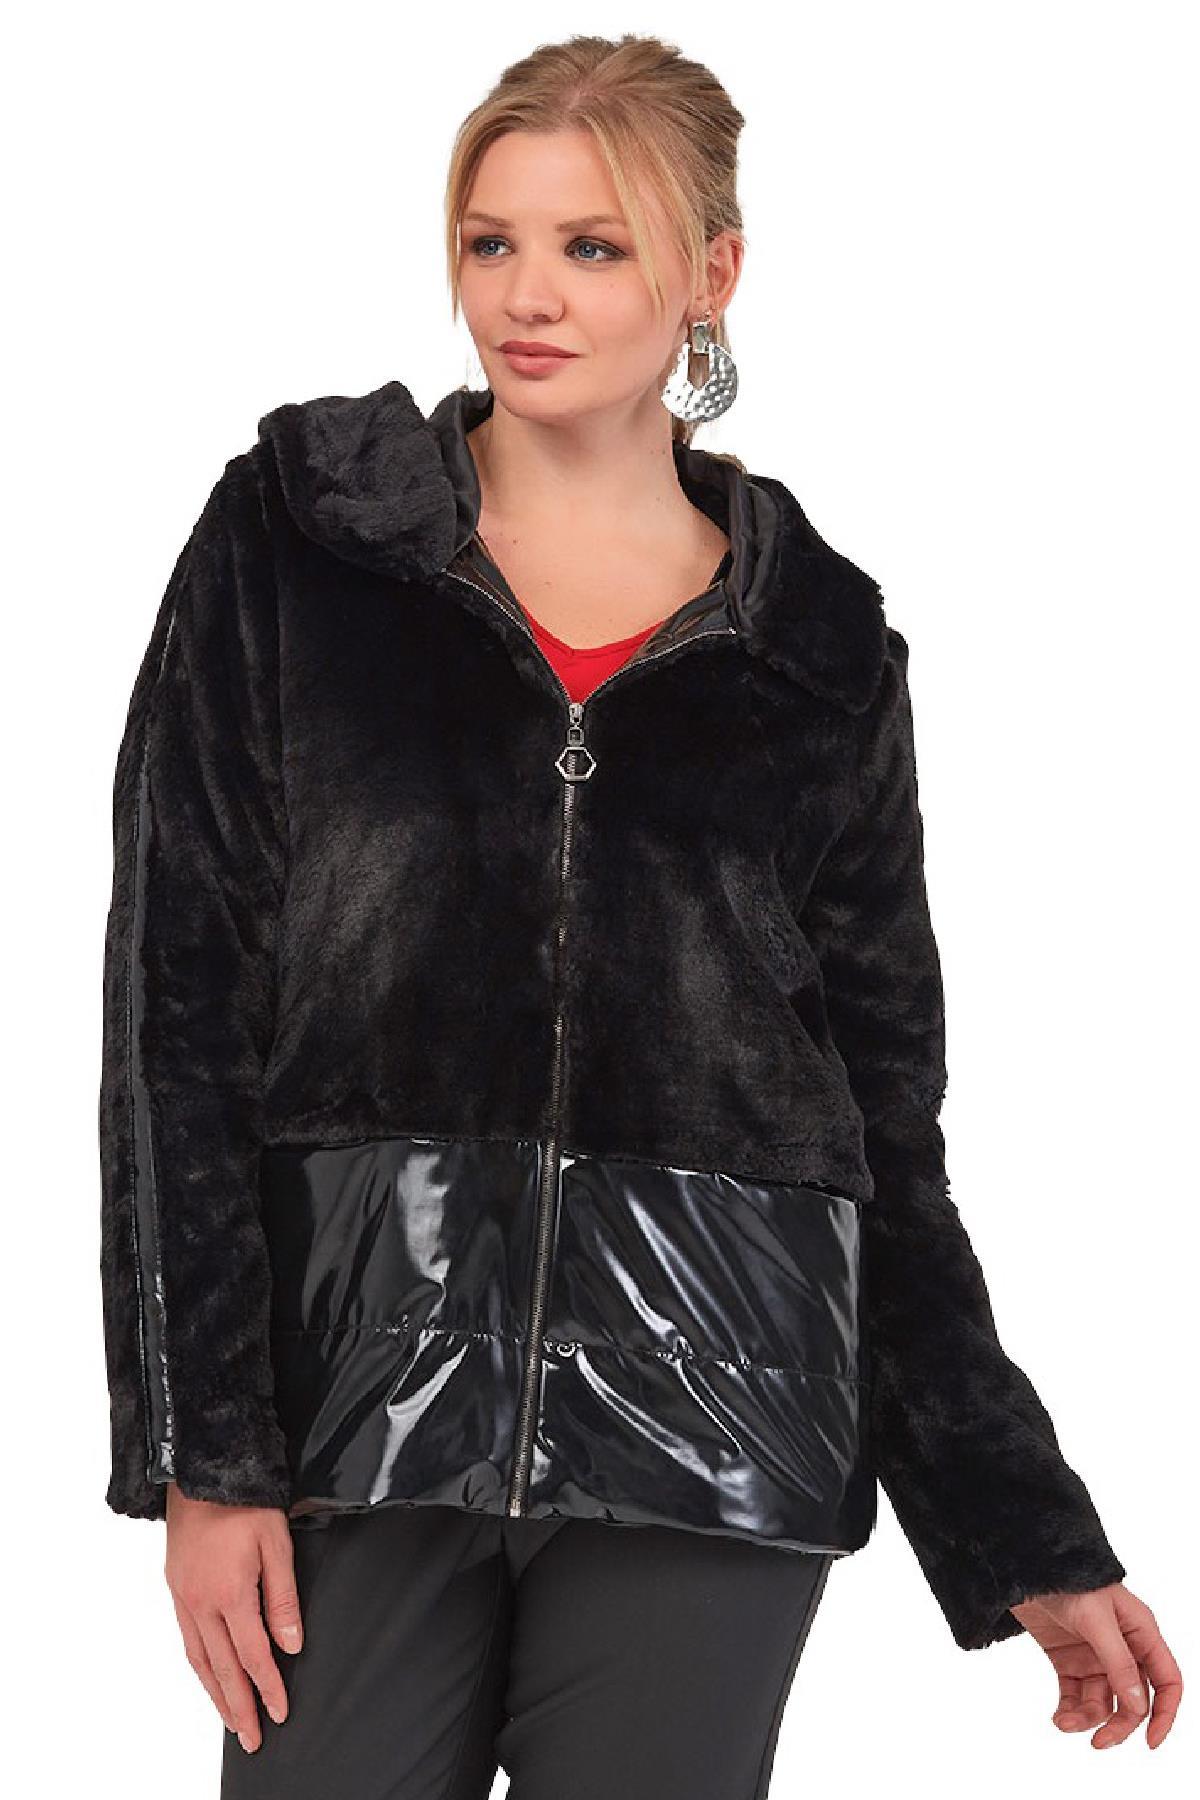 Fierte Kadın Büyük Beden Elbise Lm44200 Kayık Yaka Kadife Siyah Büyük Beden Giyim